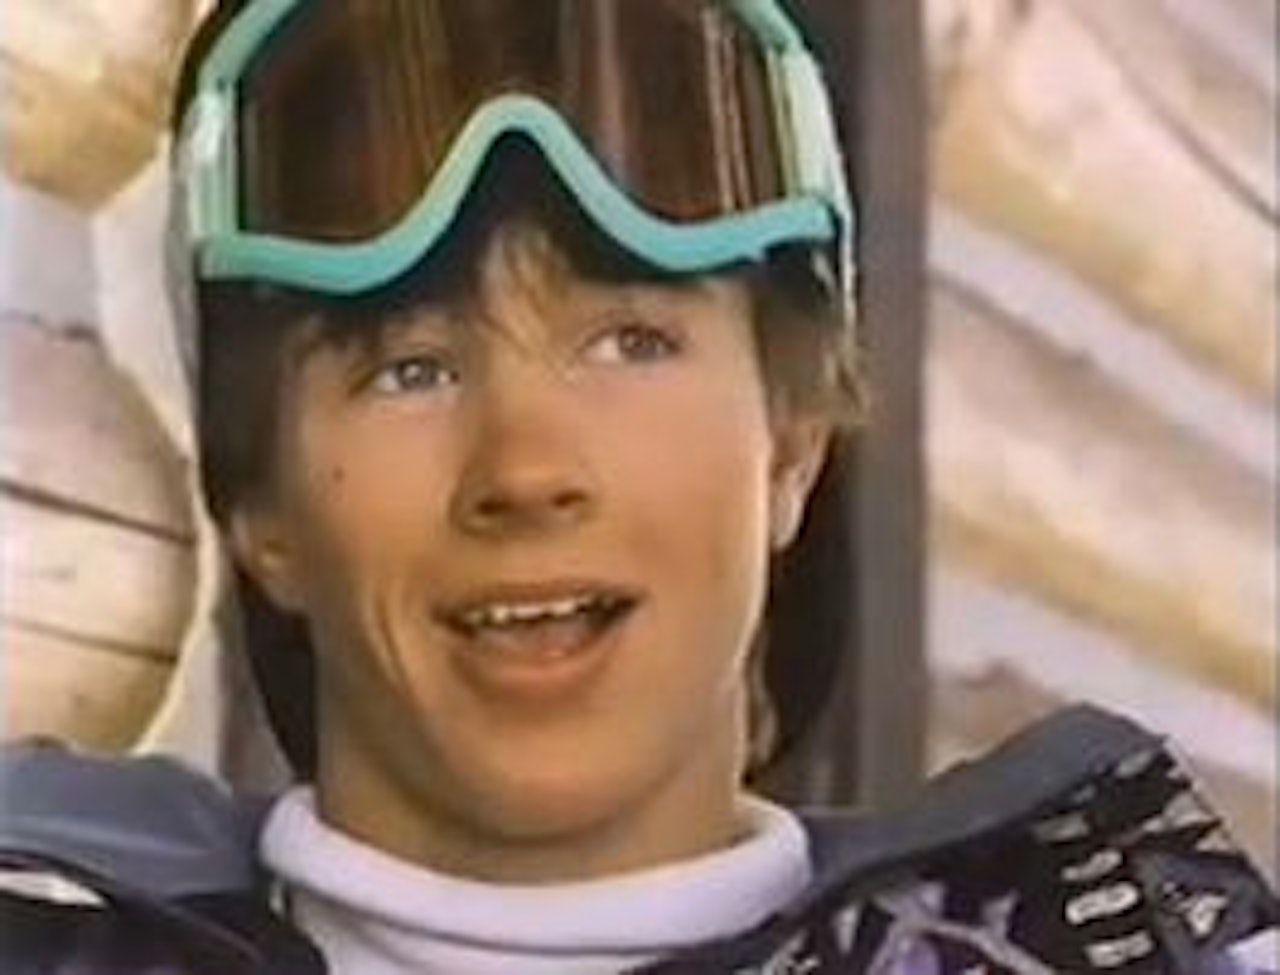 1991: 17 år gamle Terje Håkonsens store mål er å få seg bil.